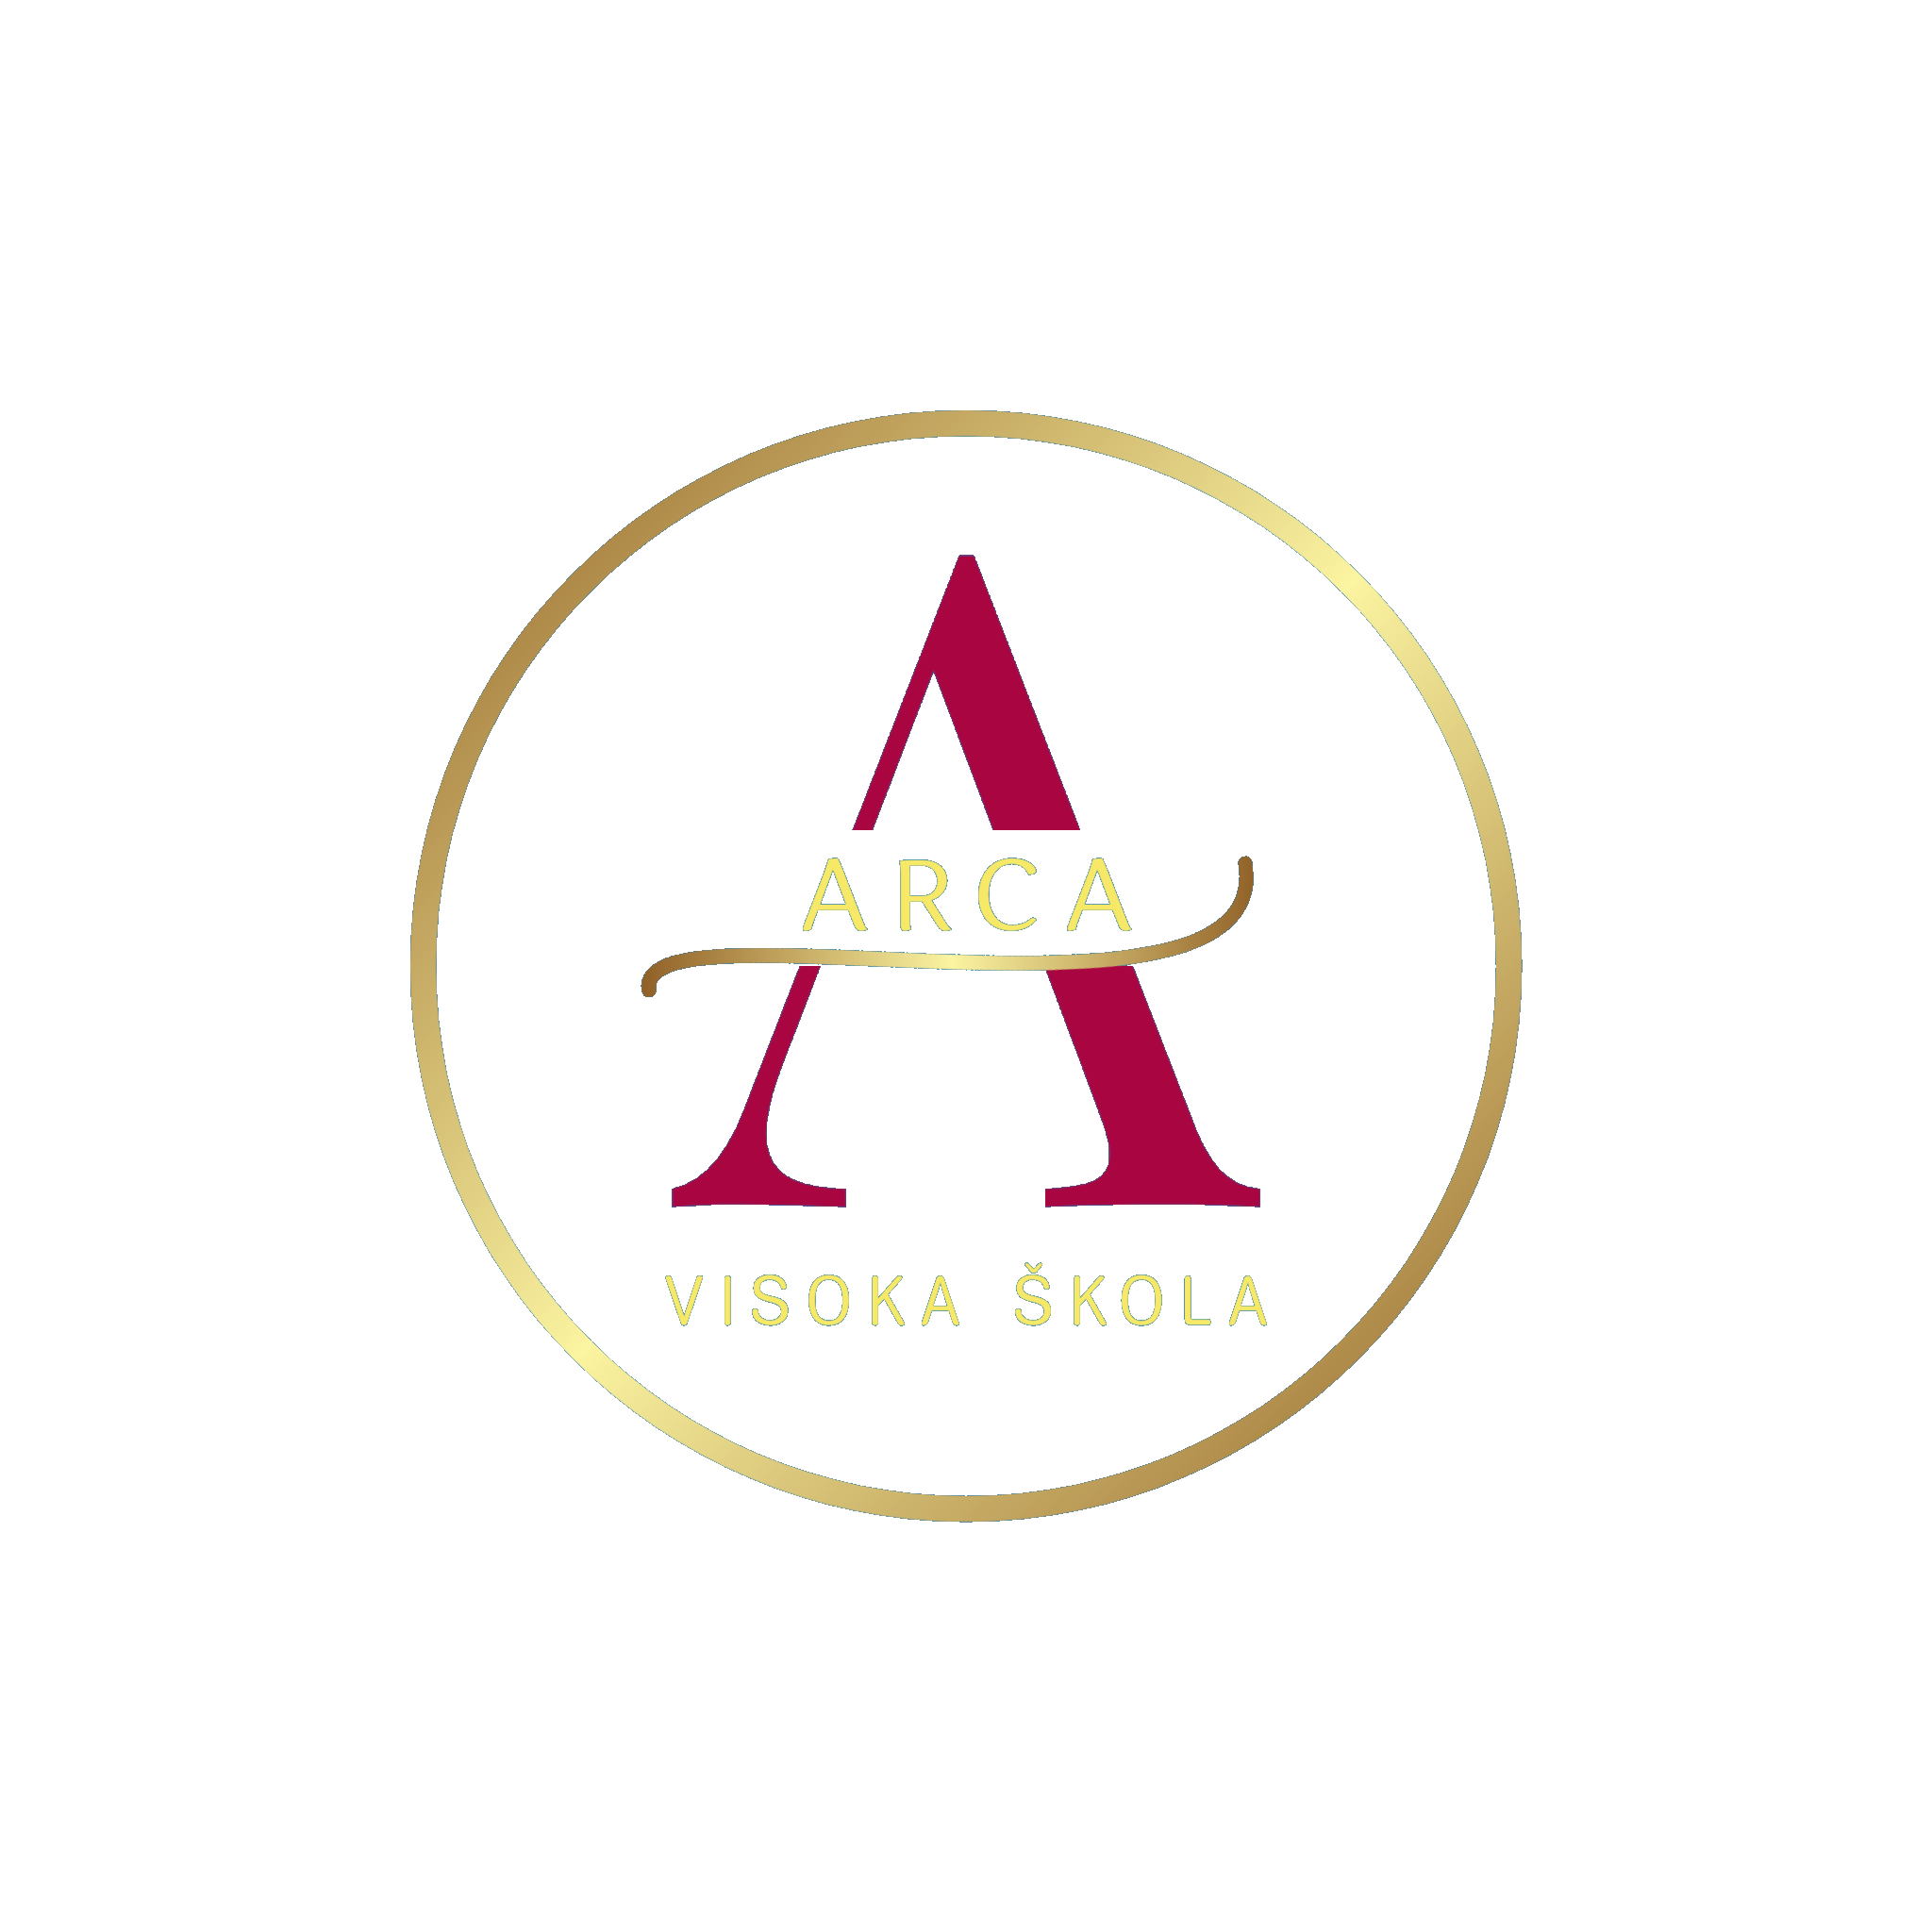 La agencia Marketing za sve de Croatia ayudó a Arca a hacer crecer su empresa con SEO y marketing digital